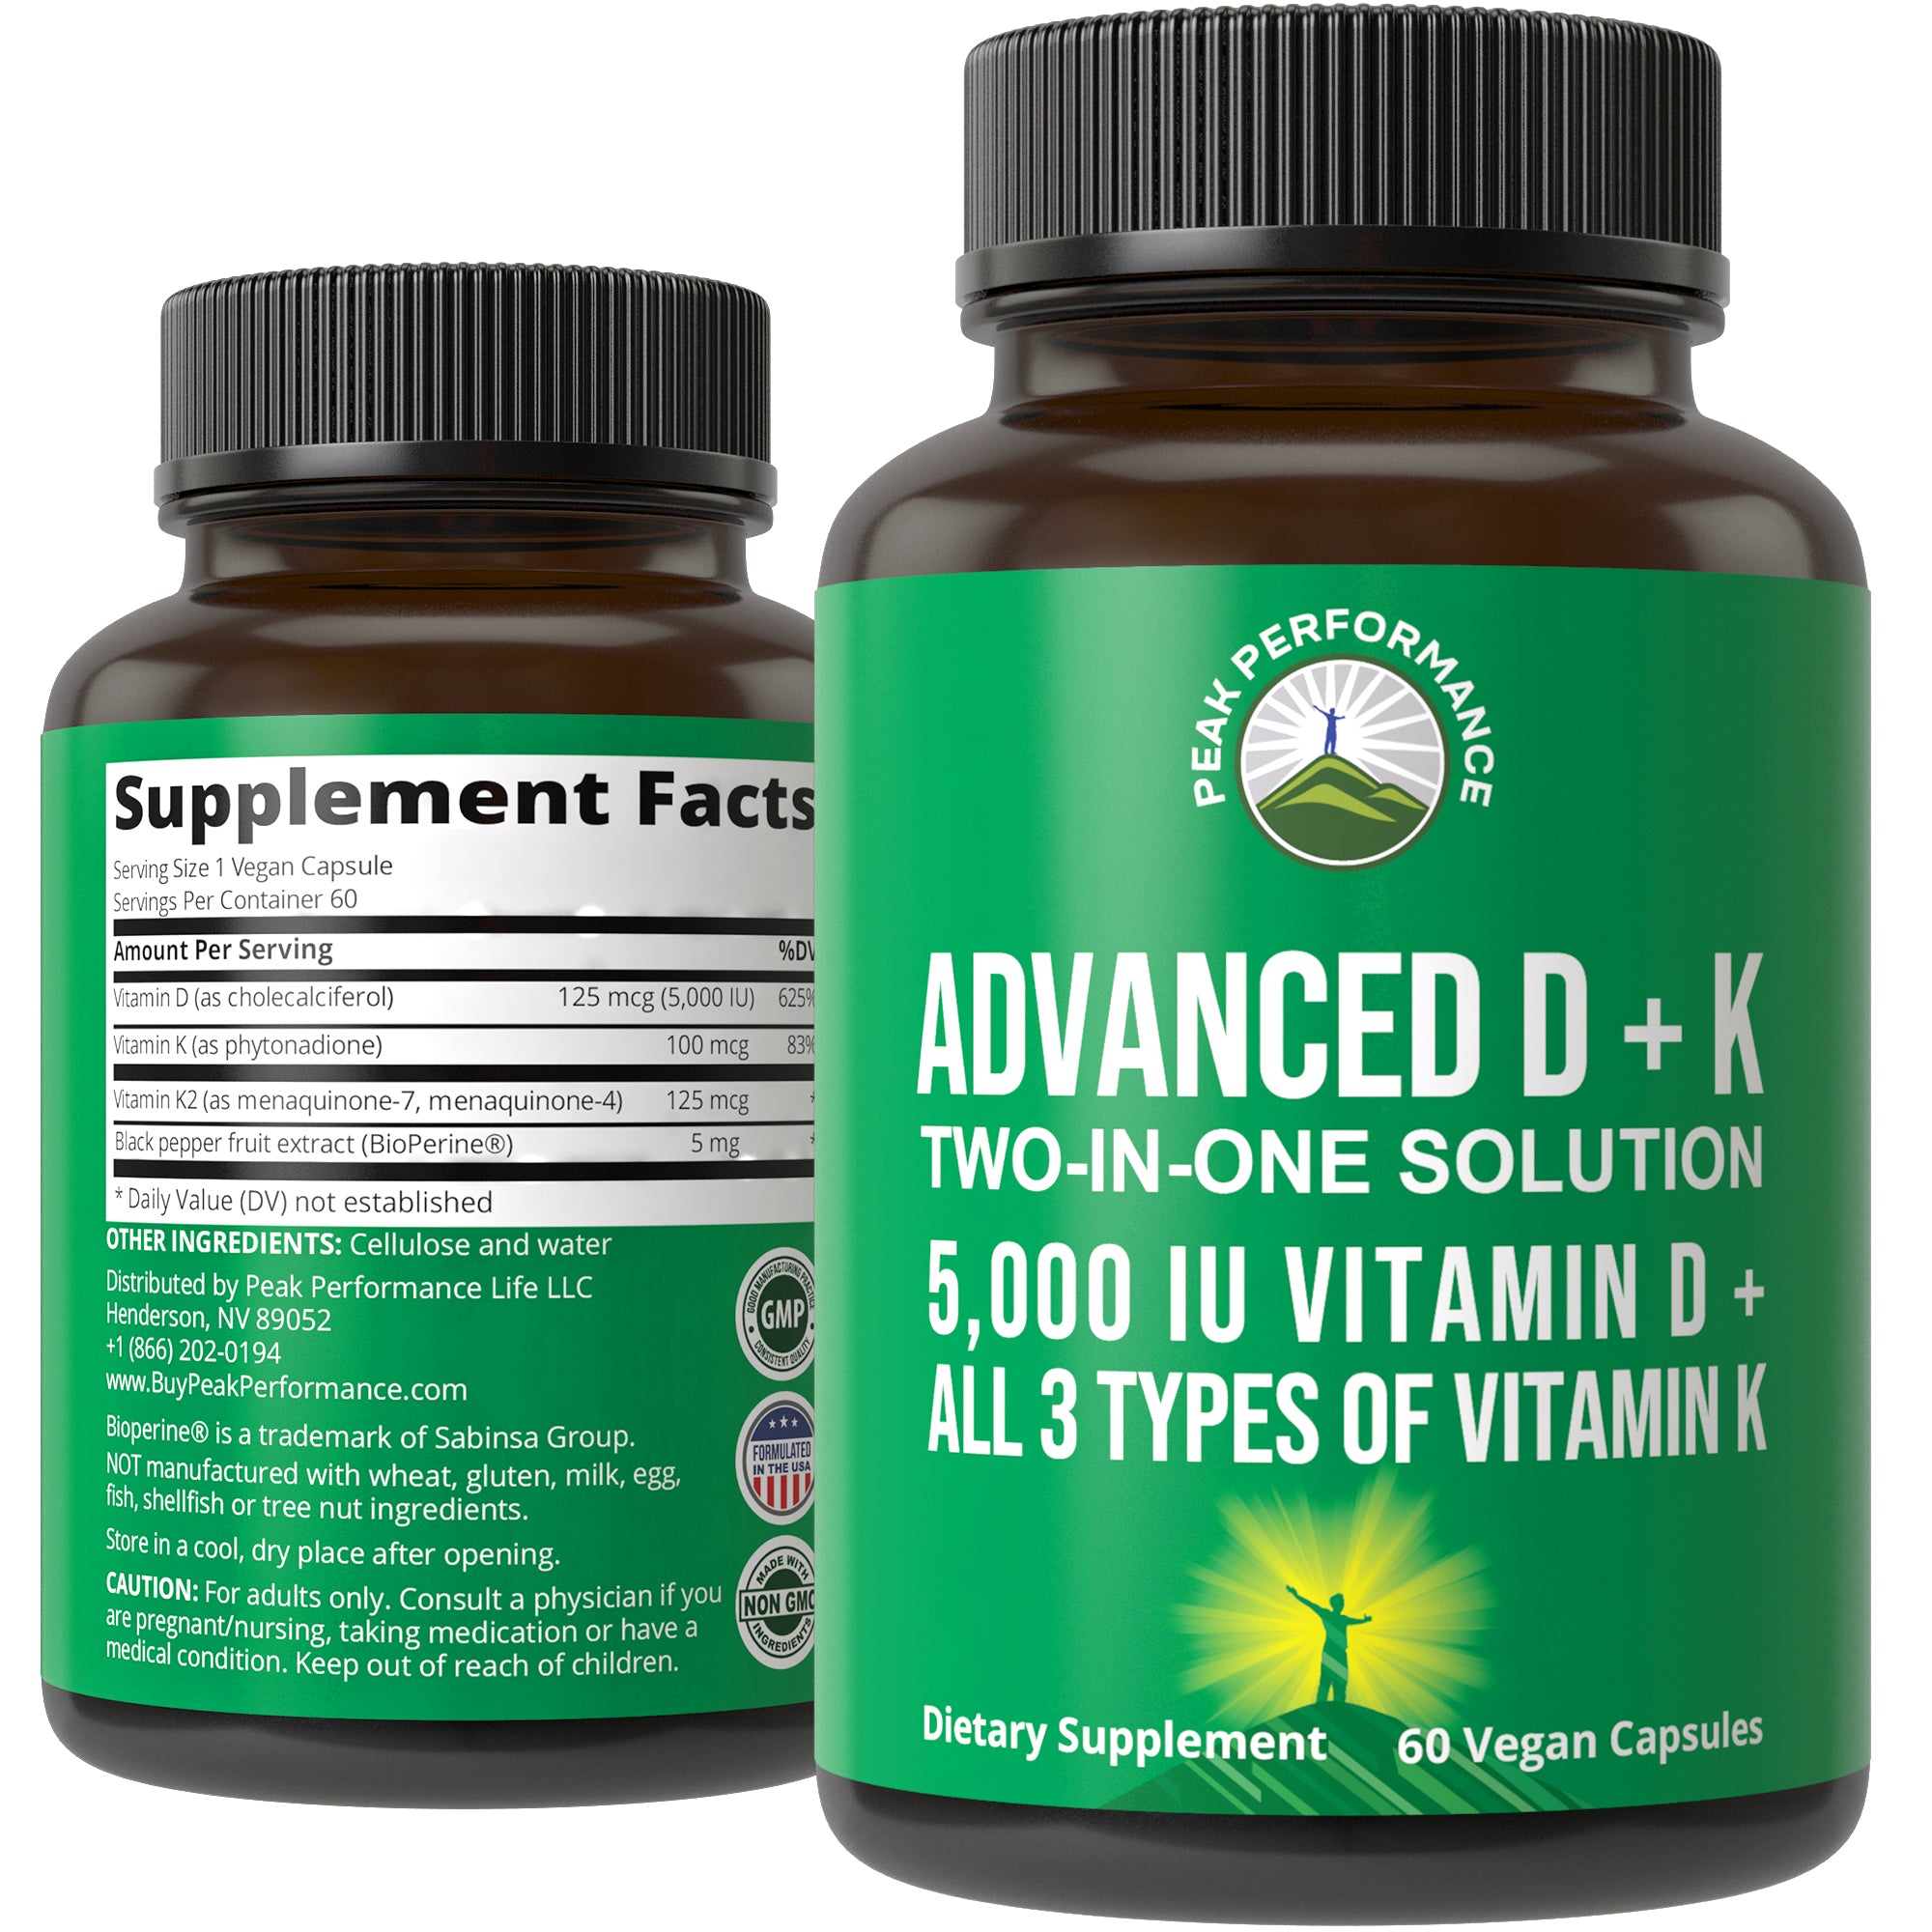 Advanced Vitamin D 5,000 IU + All 3 Types of Vitamin K